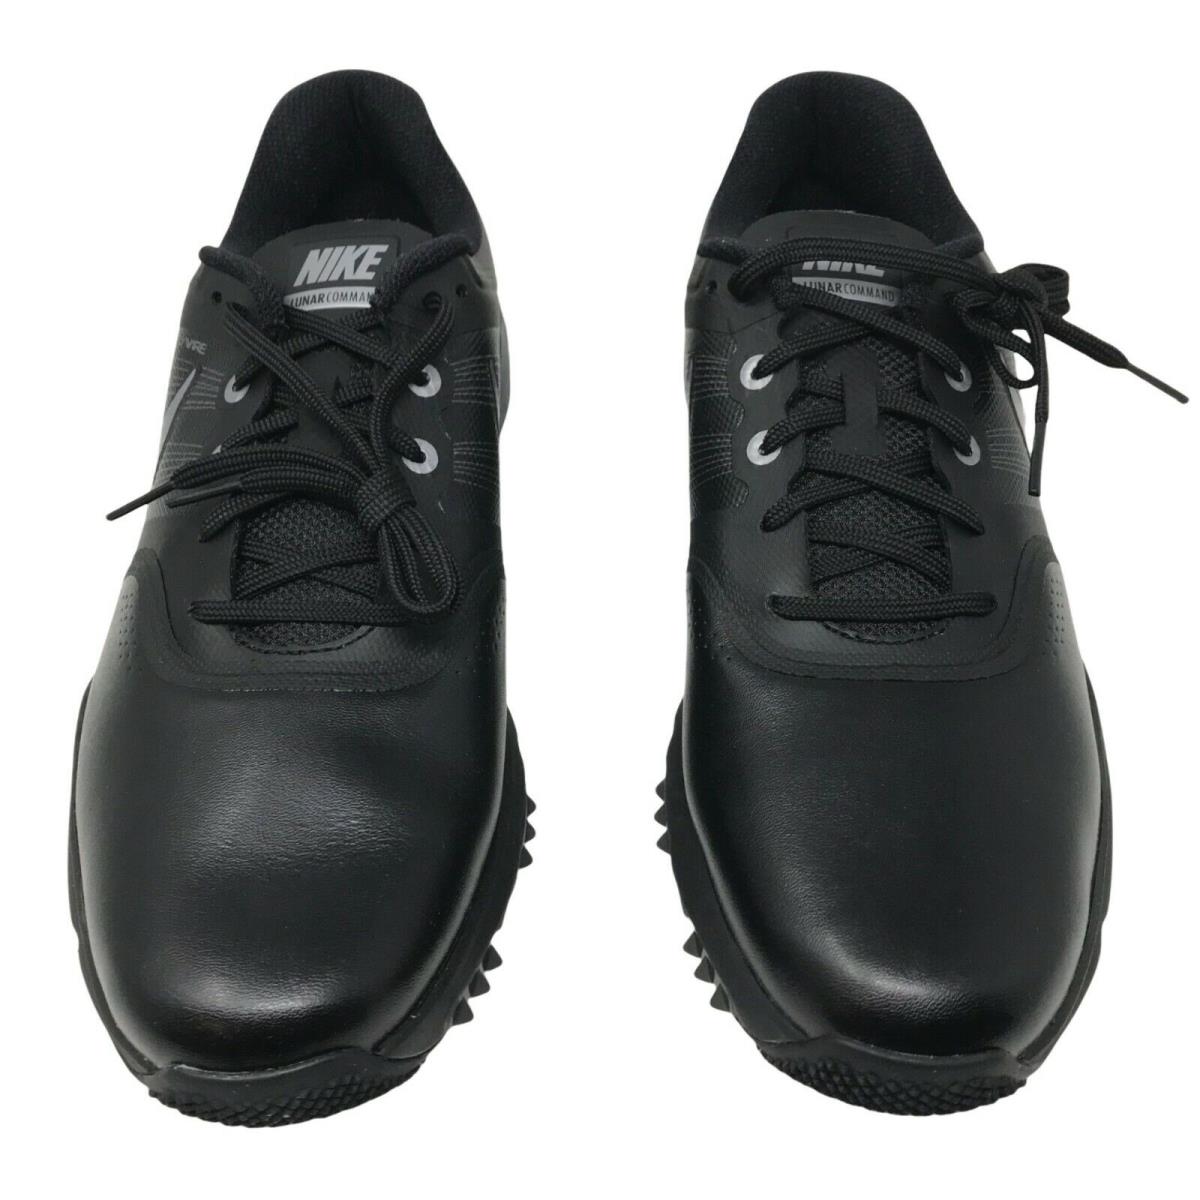 Nike Men`s Lunar Command Lightweight Golf Shoes Size 9.5